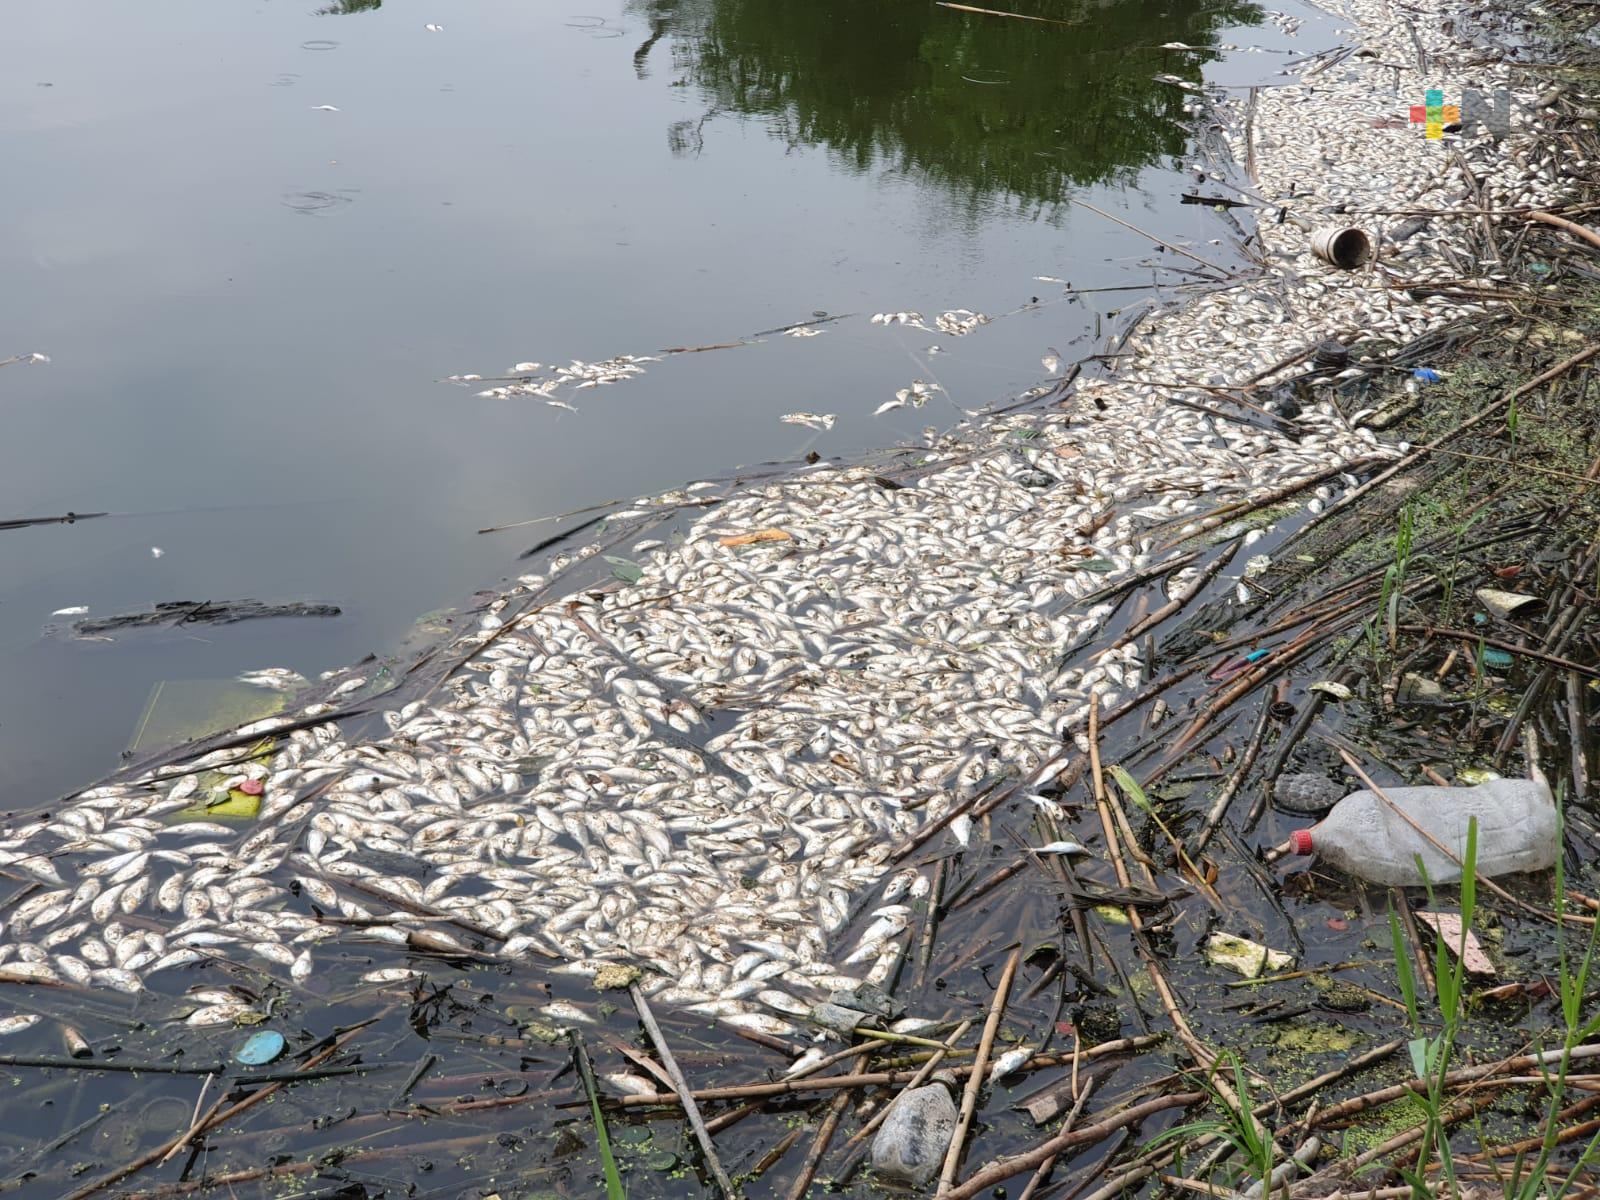 Peces muertos y basura en laguna de fraccionamiento habitacional de Medellín